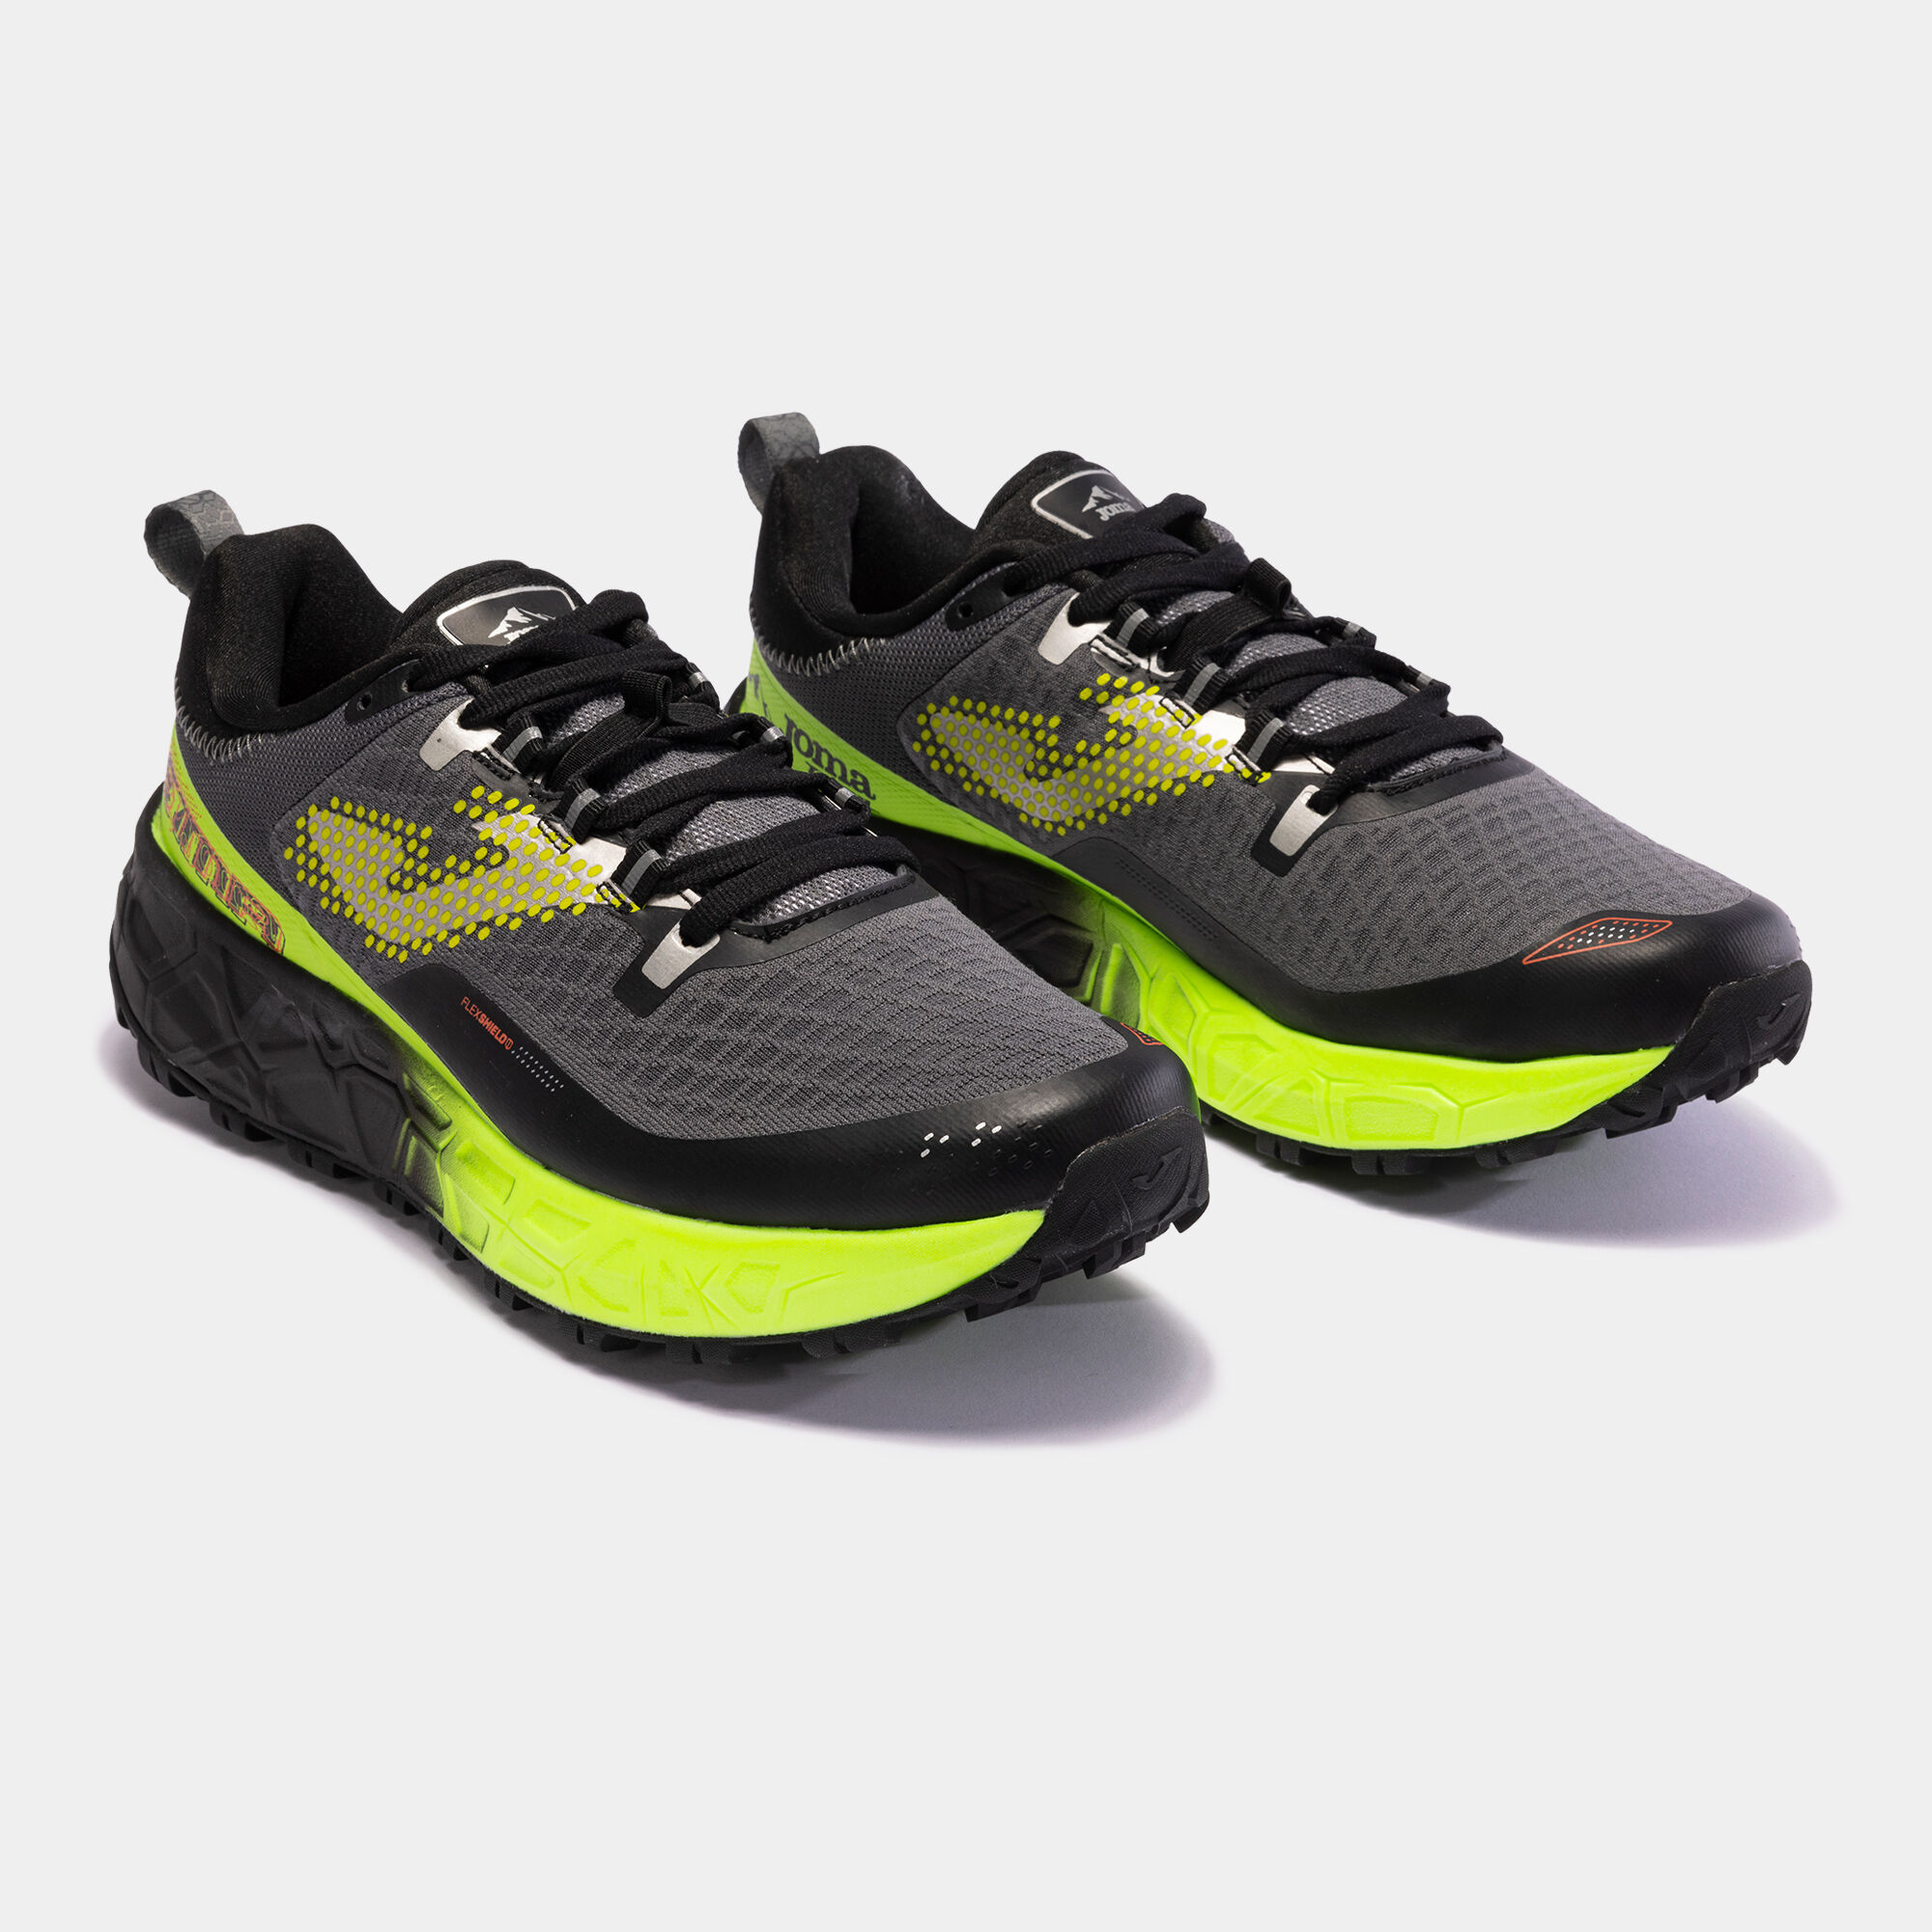 Chaussures trail running Tk.Sima 23 homme noir jaune fluo